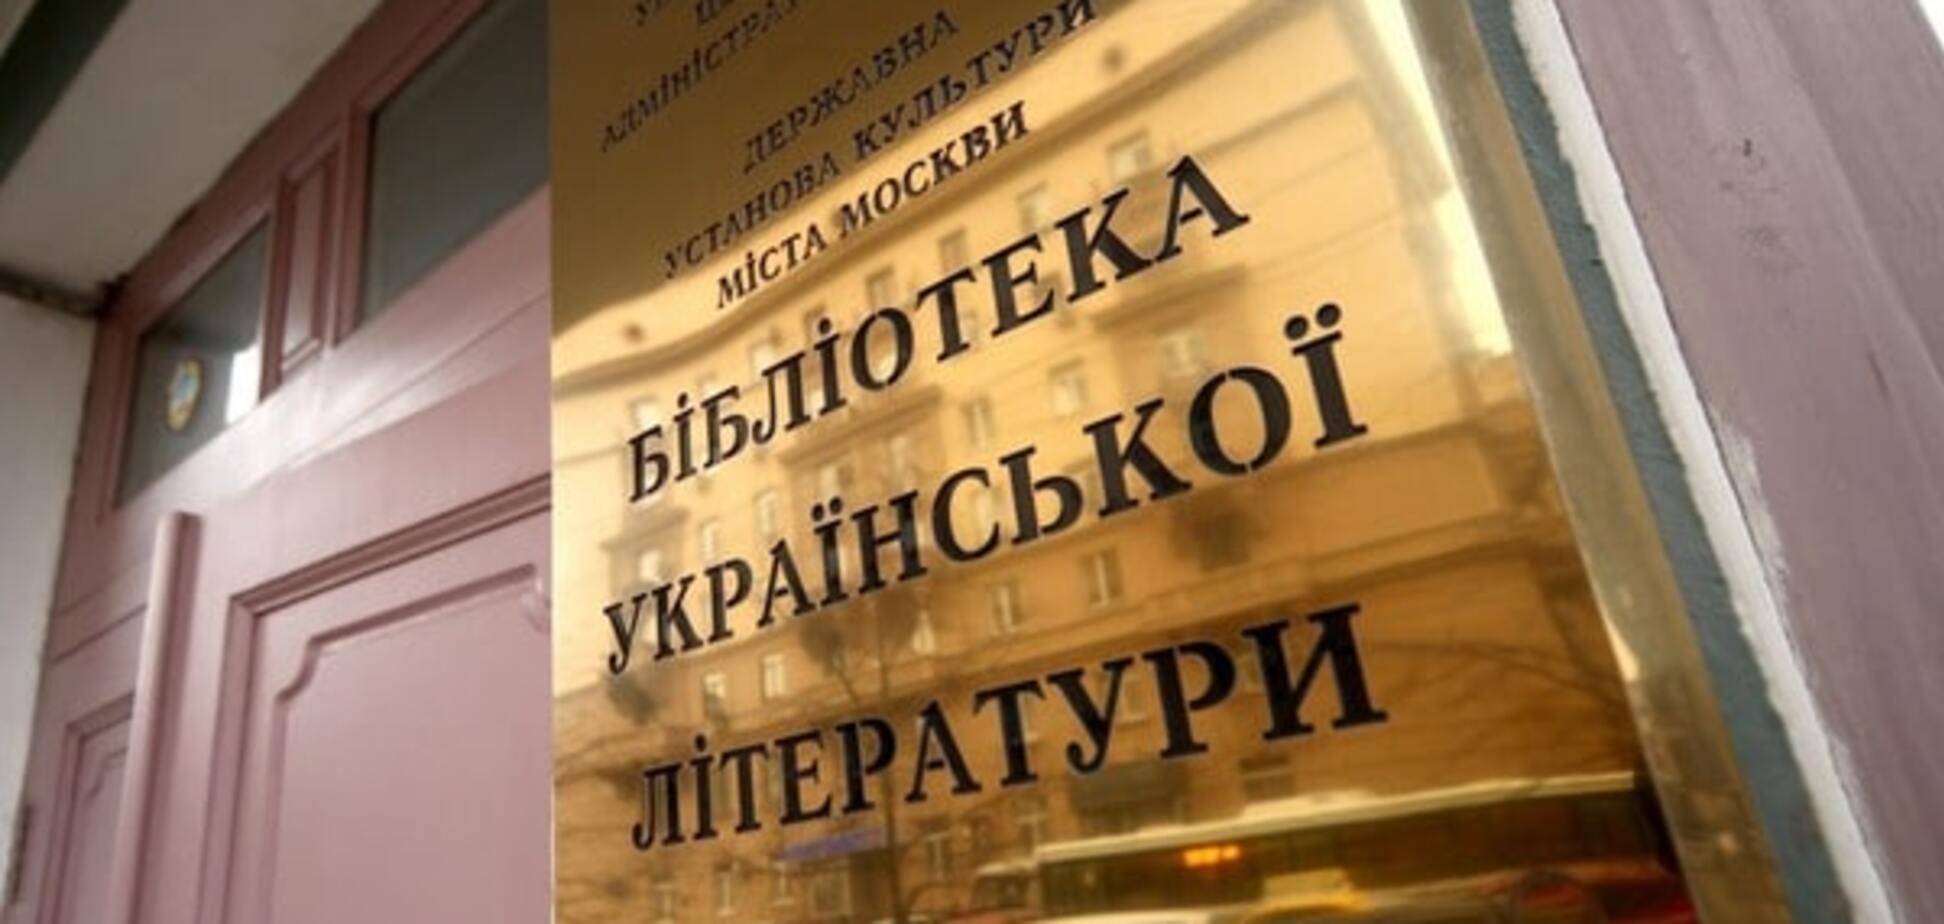 Протестуем: МИД отреагировал на передачу фондов Украинской библиотеки в Москве